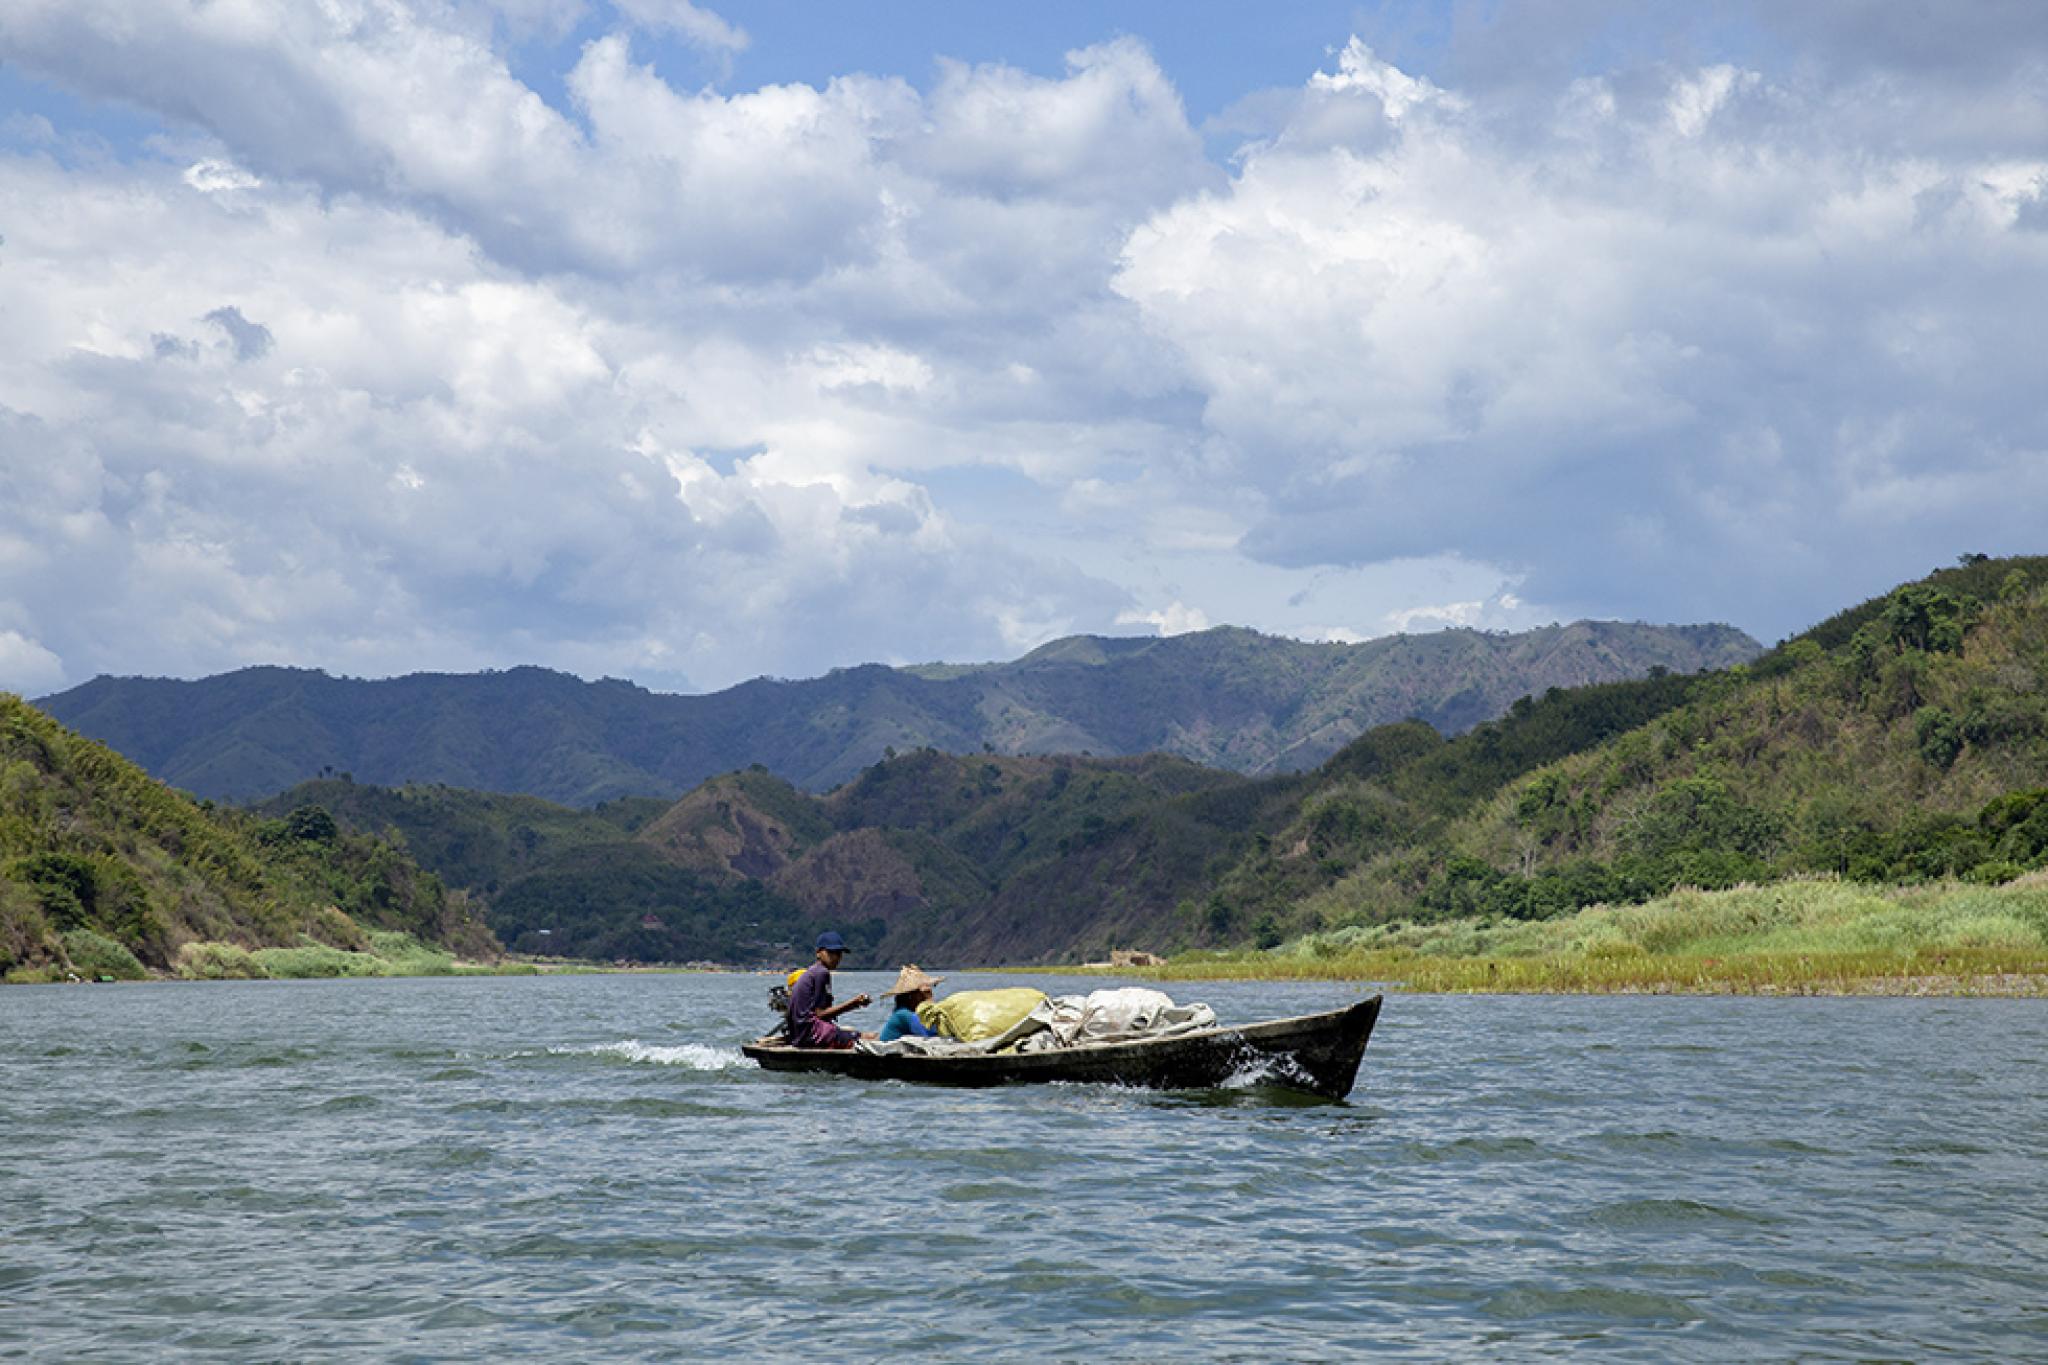 Rural river scene in Myanmar